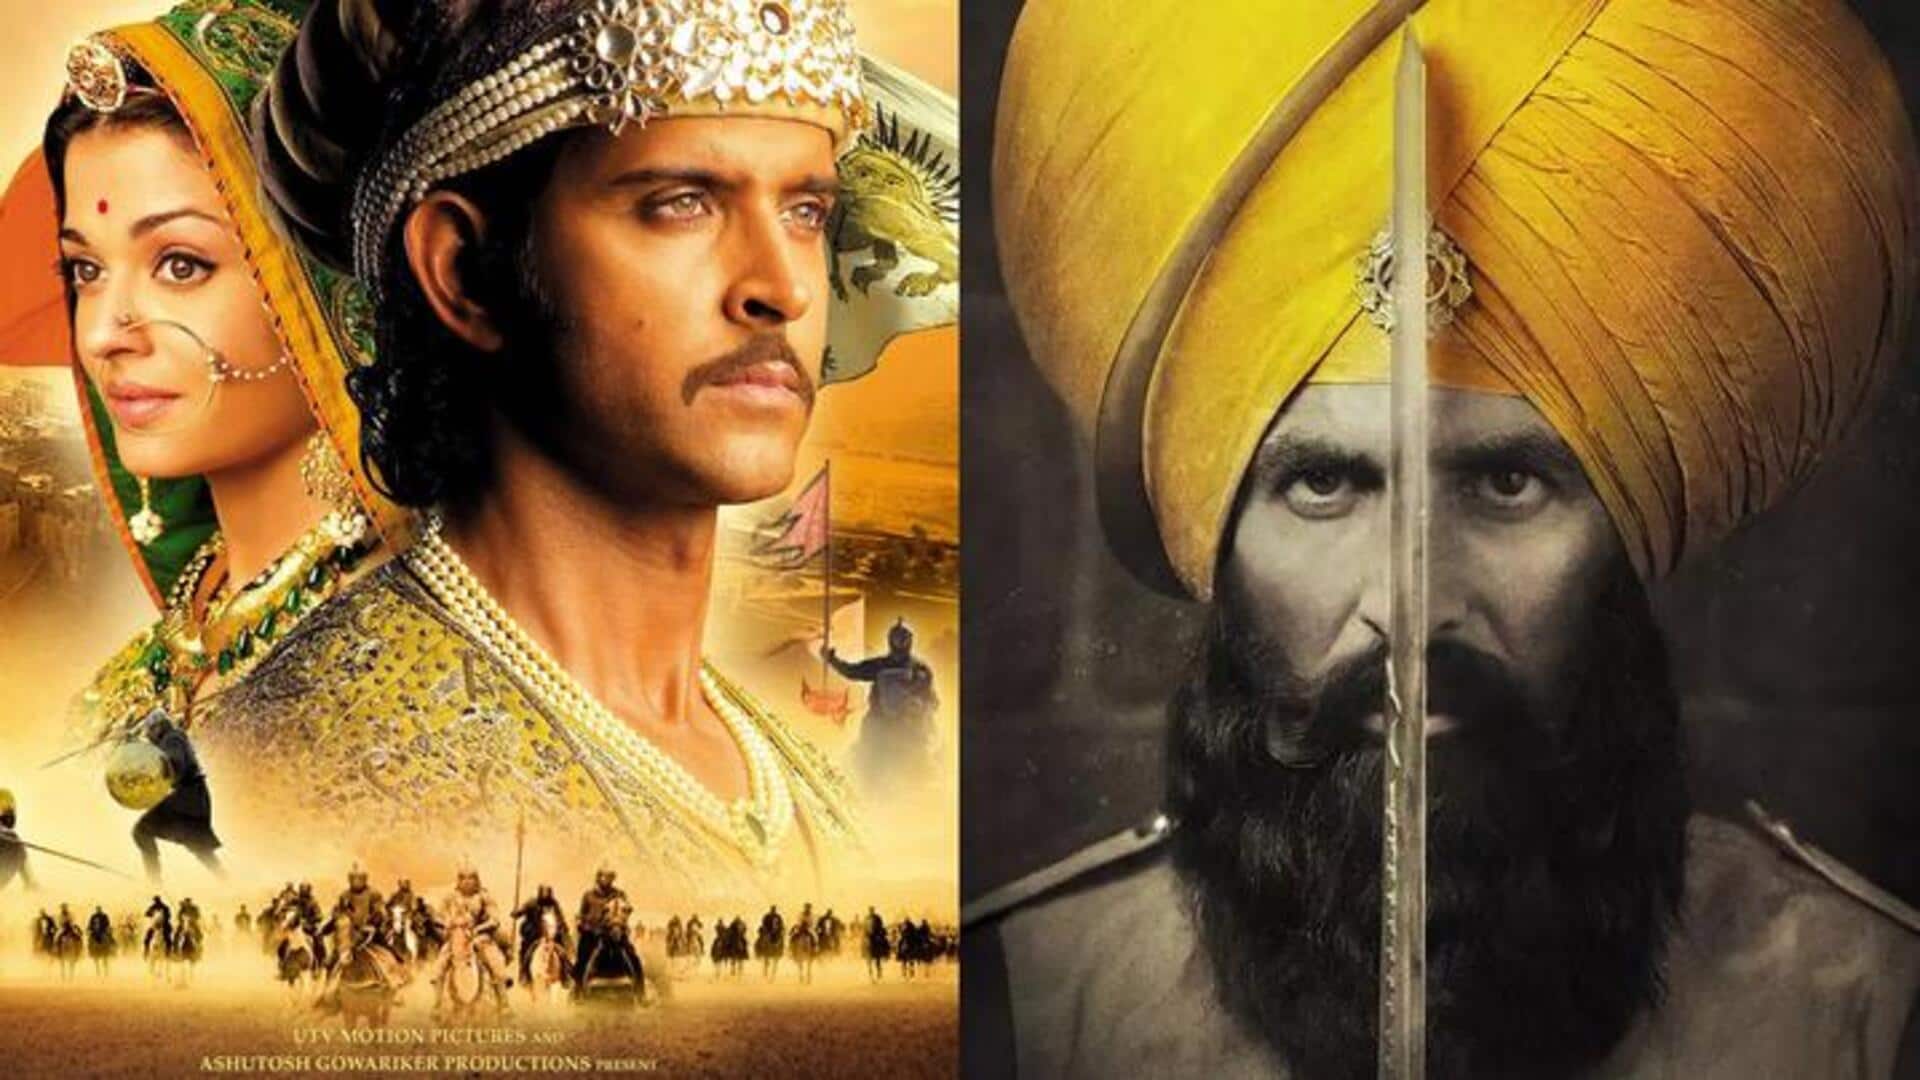 भारतीय इतिहास को दर्शाती हैं बॉलीवुड की ये फिल्में, IMDb पर भी मिली शानदार रेटिंग 